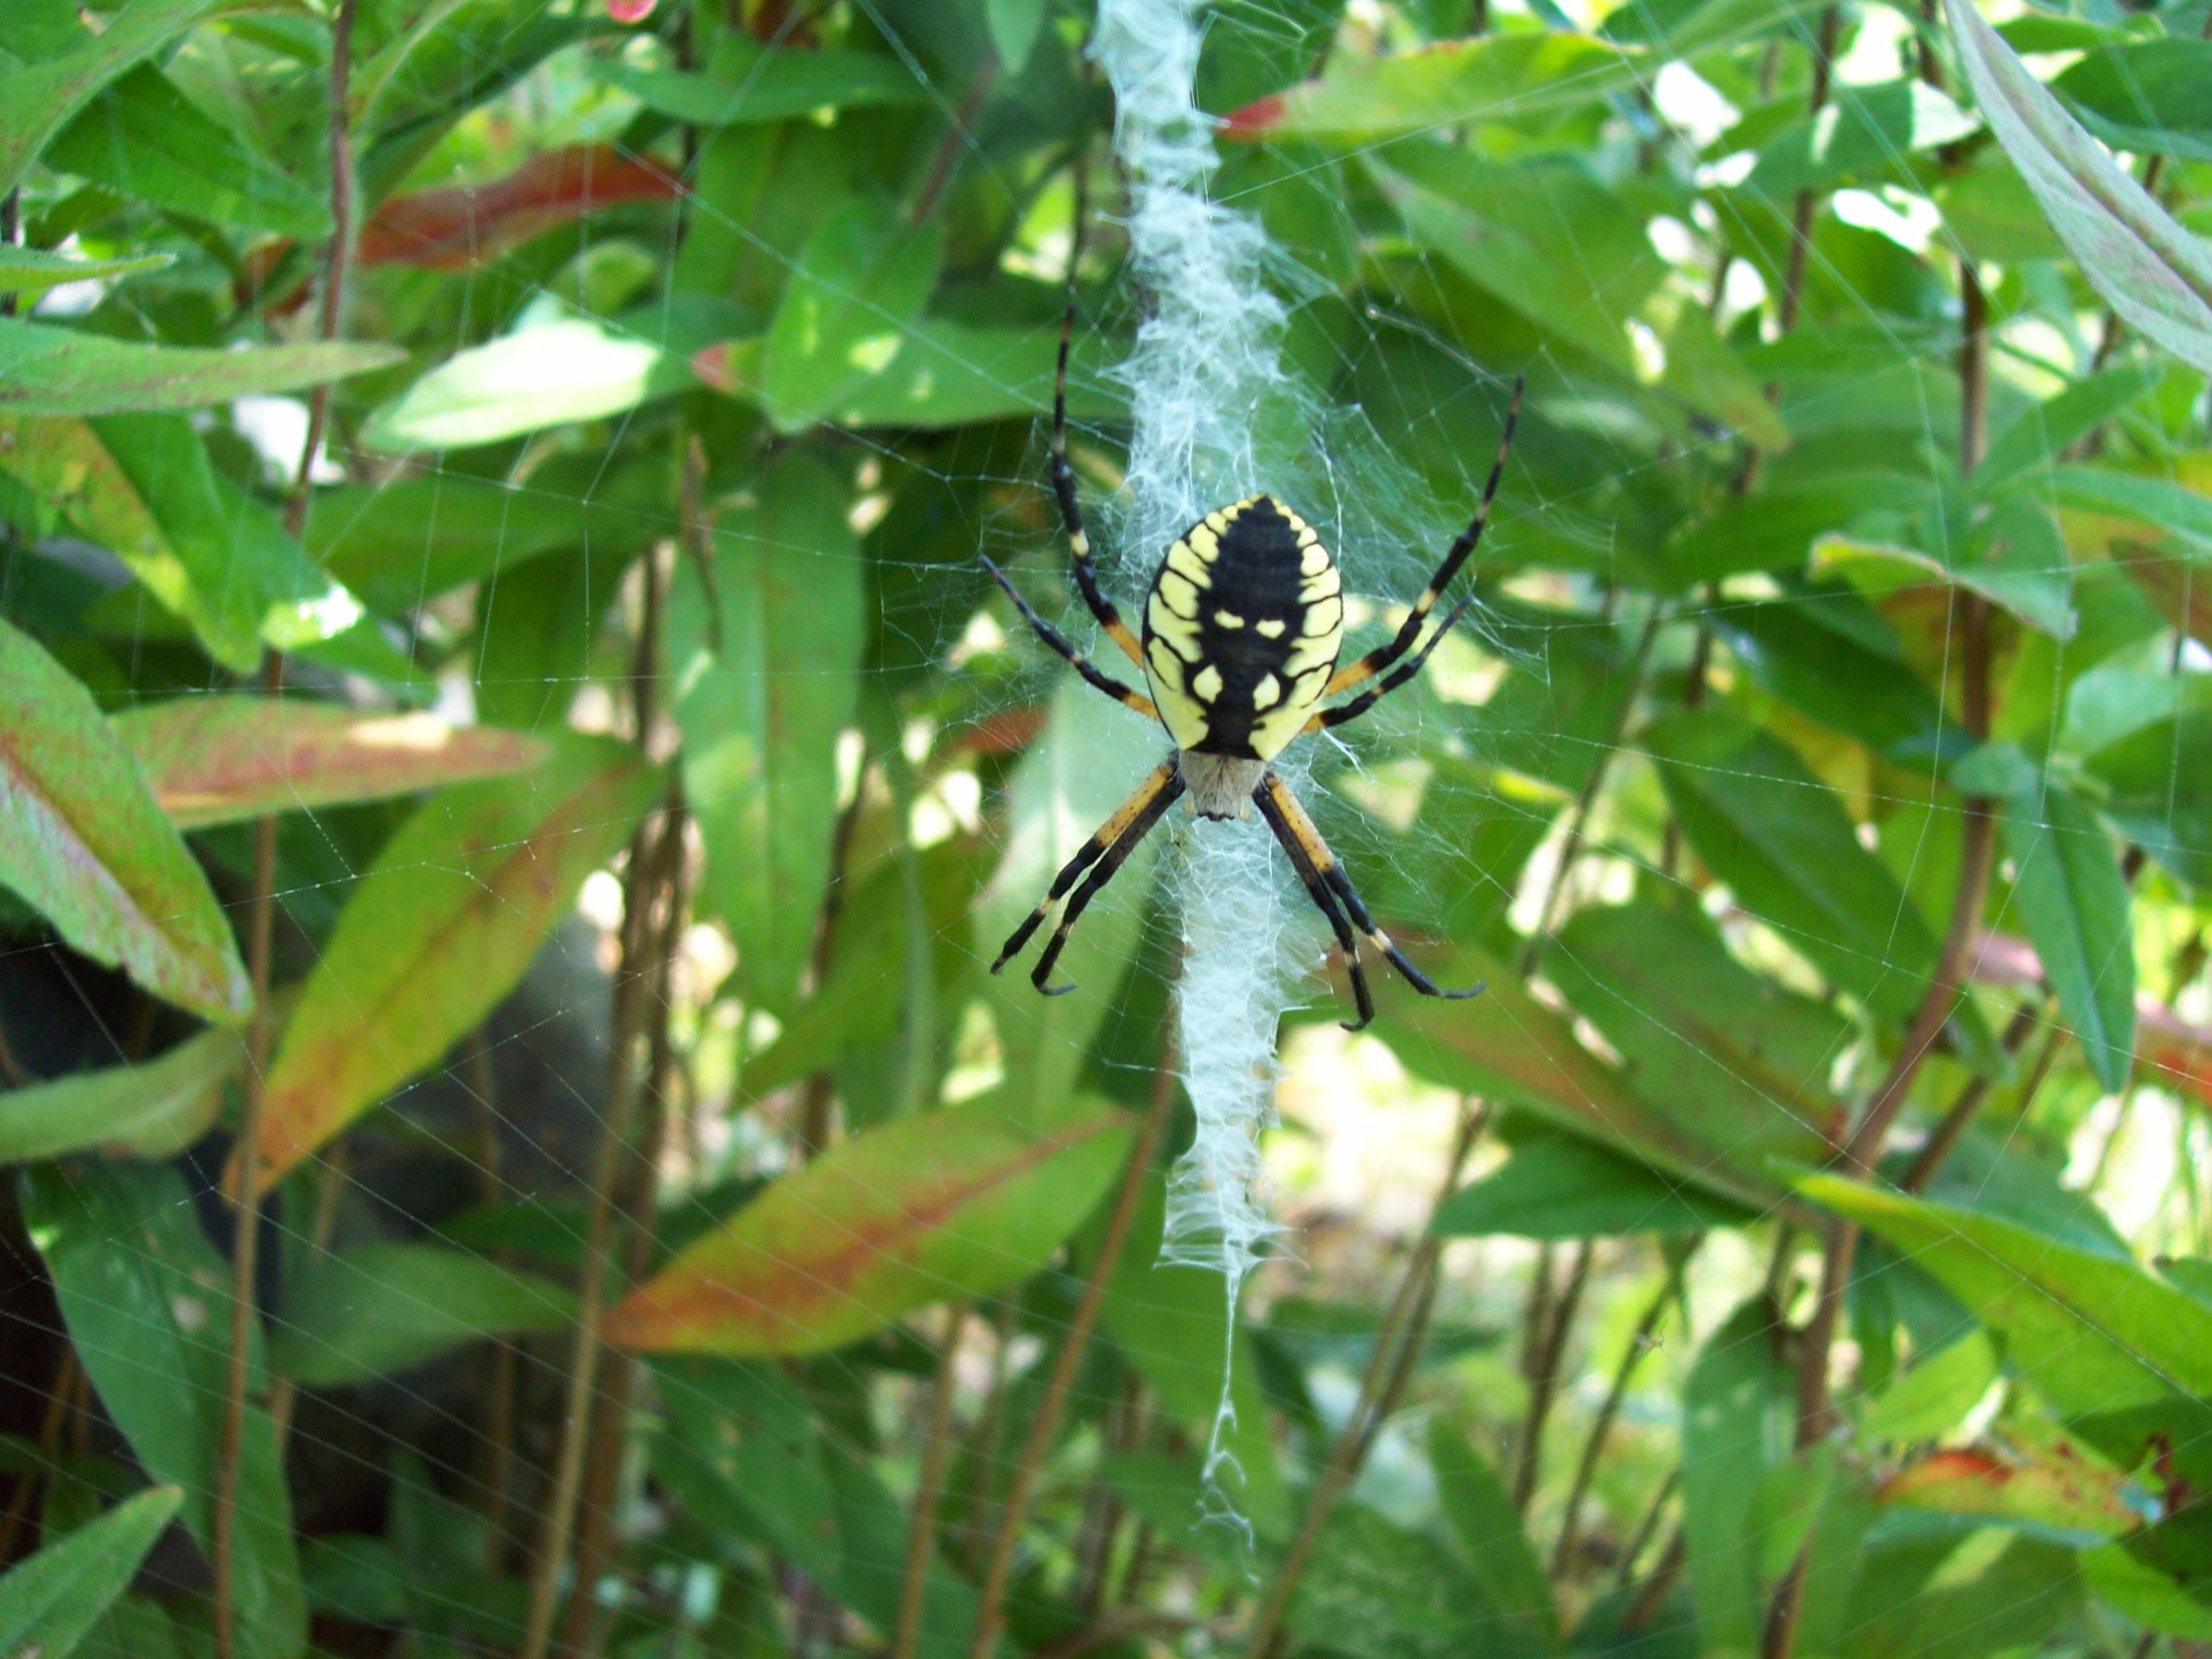 Garden Spider (user submitted)